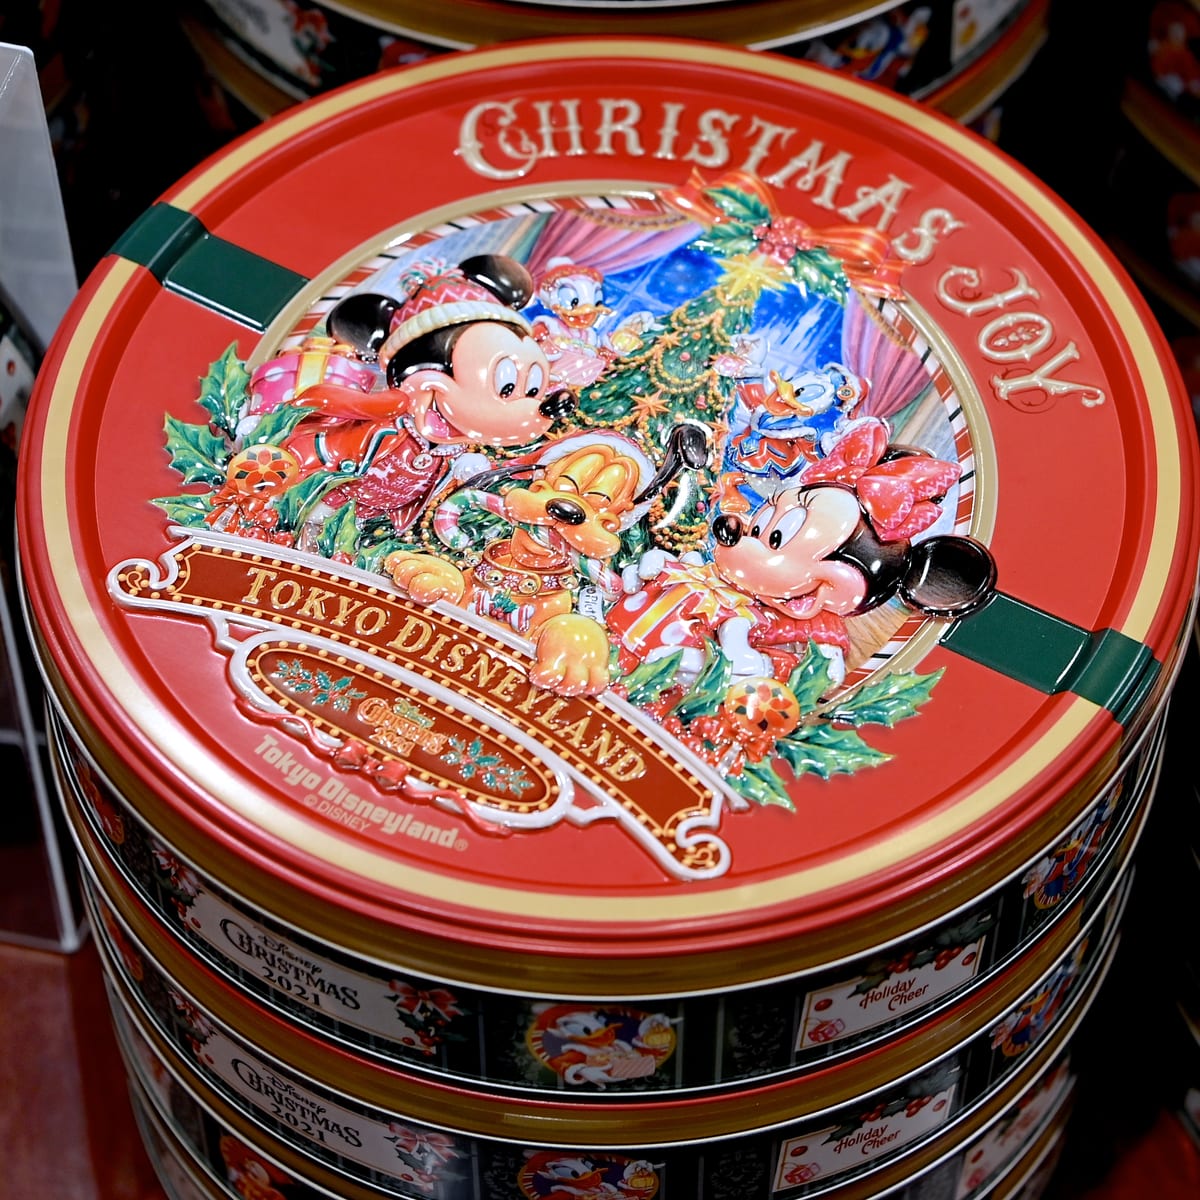 ディズニー クリスマス ストーリーズ をイメージ 東京ディズニーランド ディズニー クリスマス21 グッズ お土産